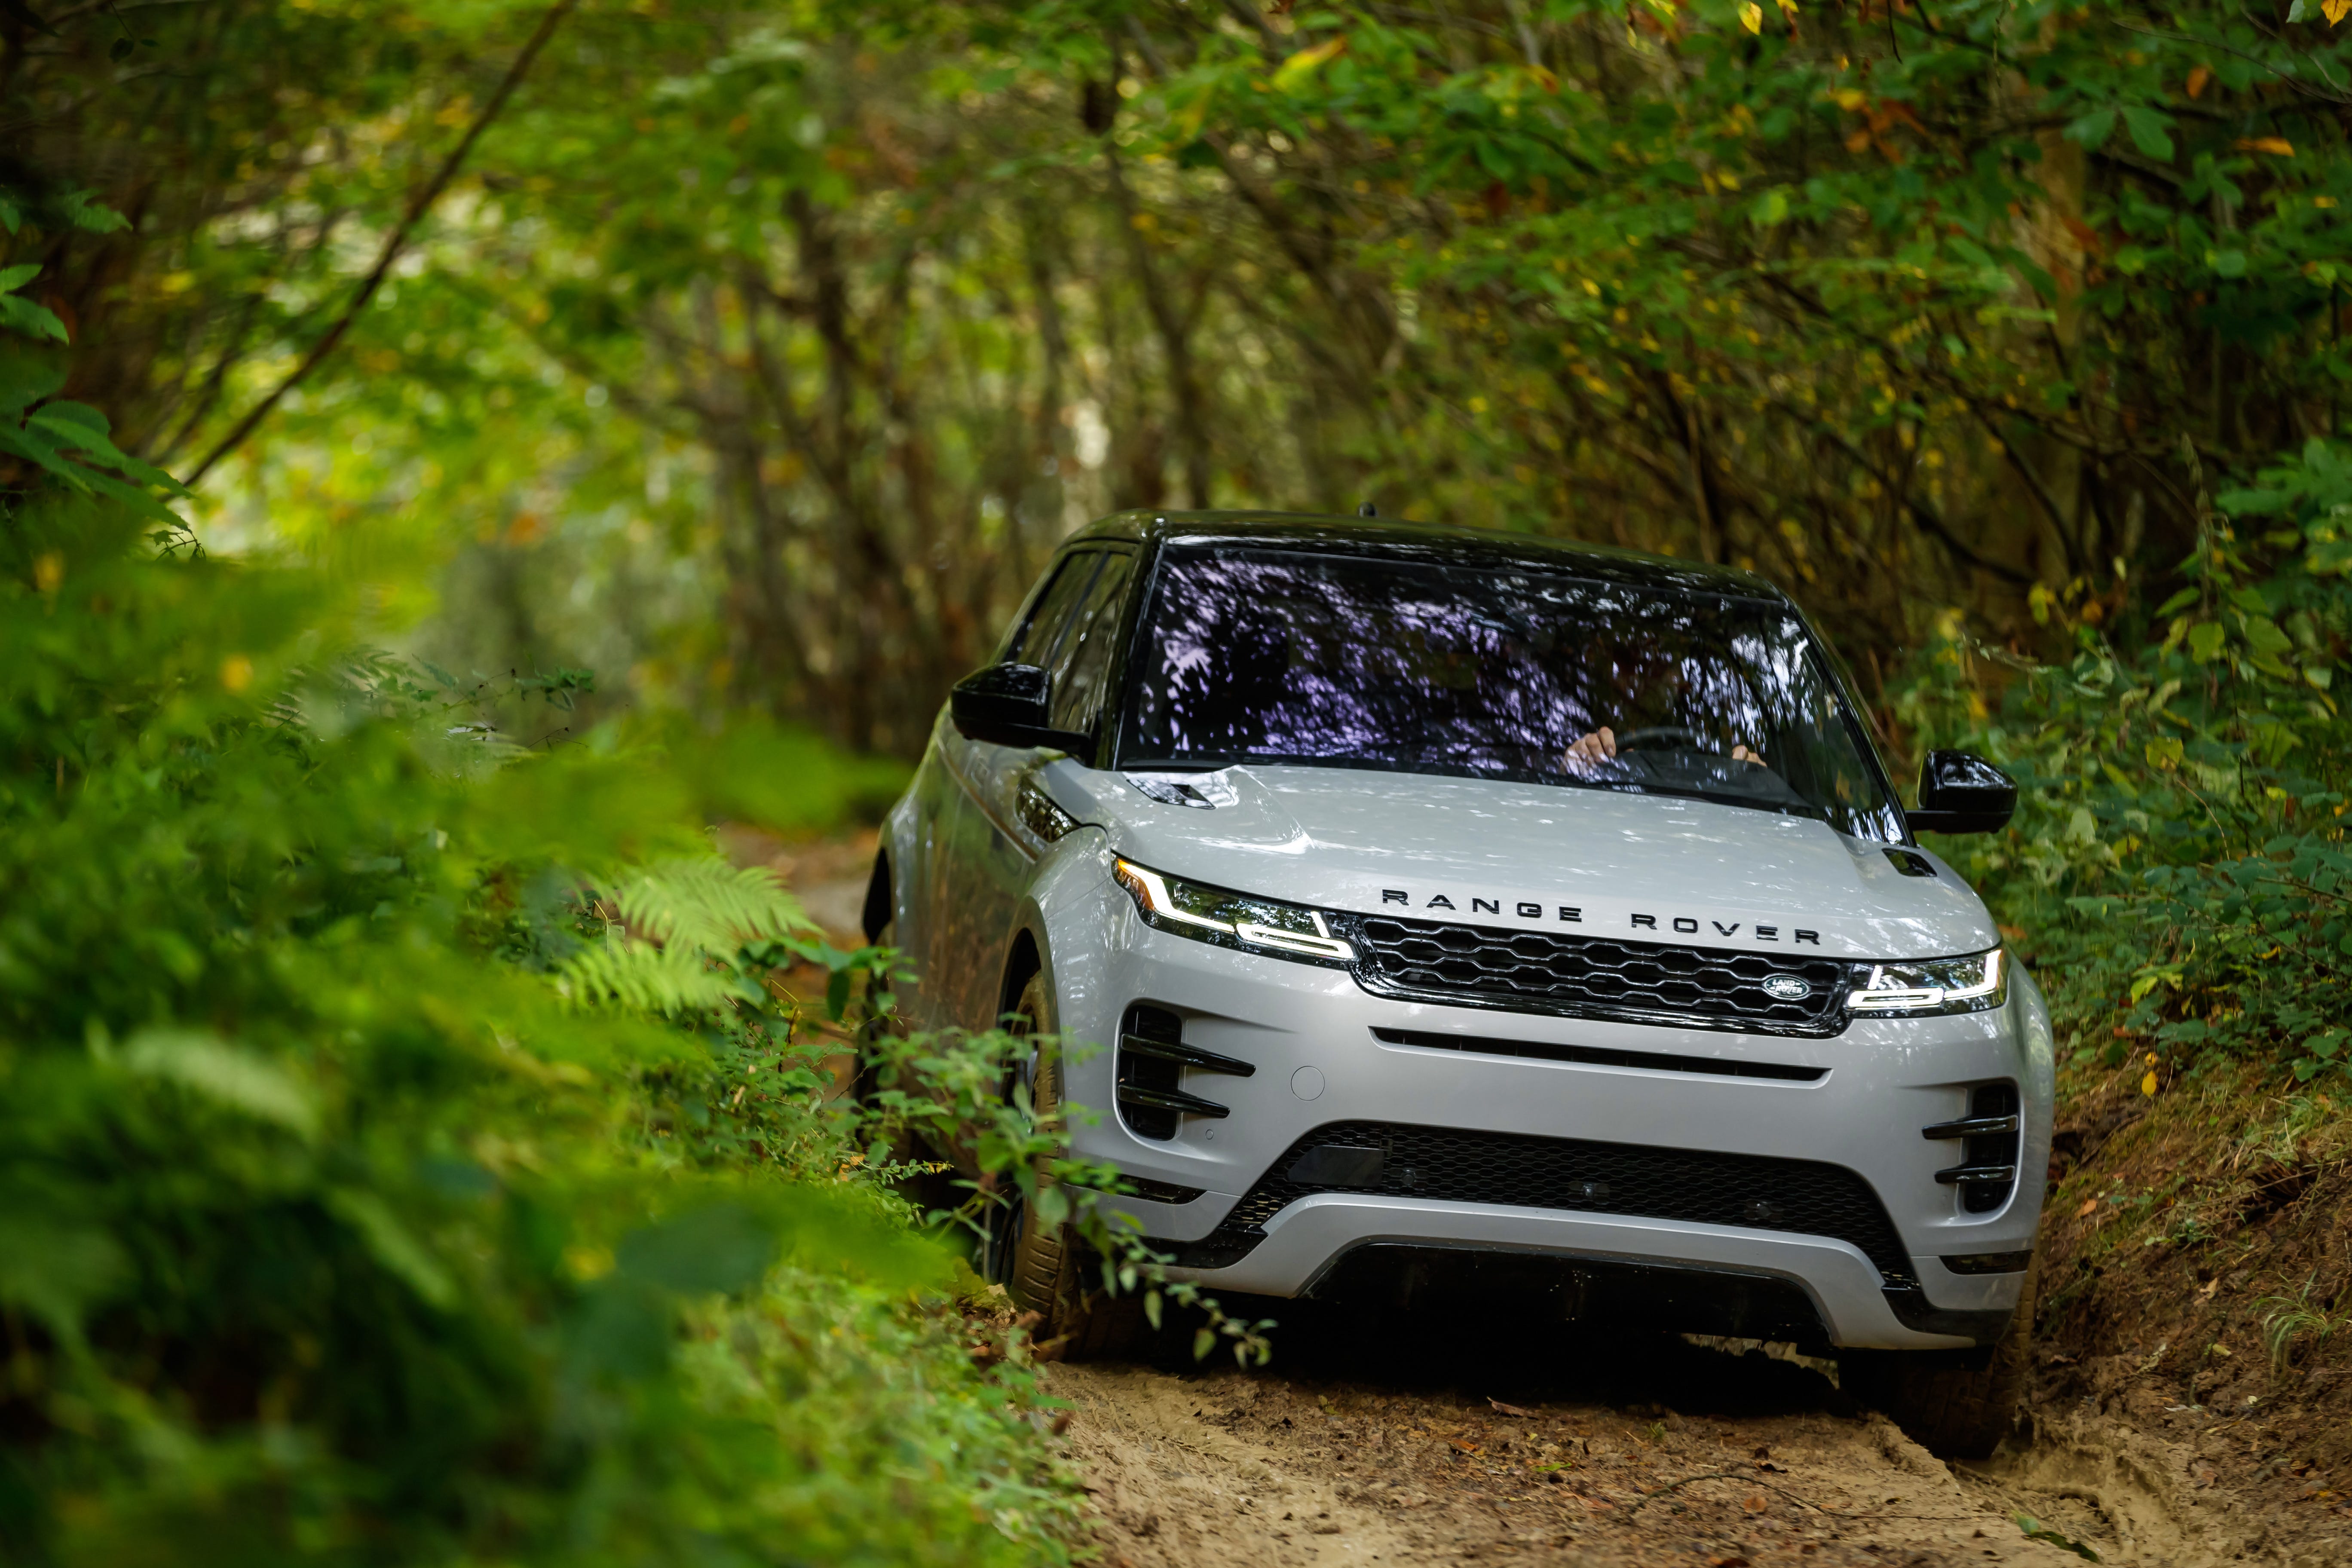 erven Verbergen Pest 2020 Range Rover Evoque: Land Rover reveals redesigned luxury SUV